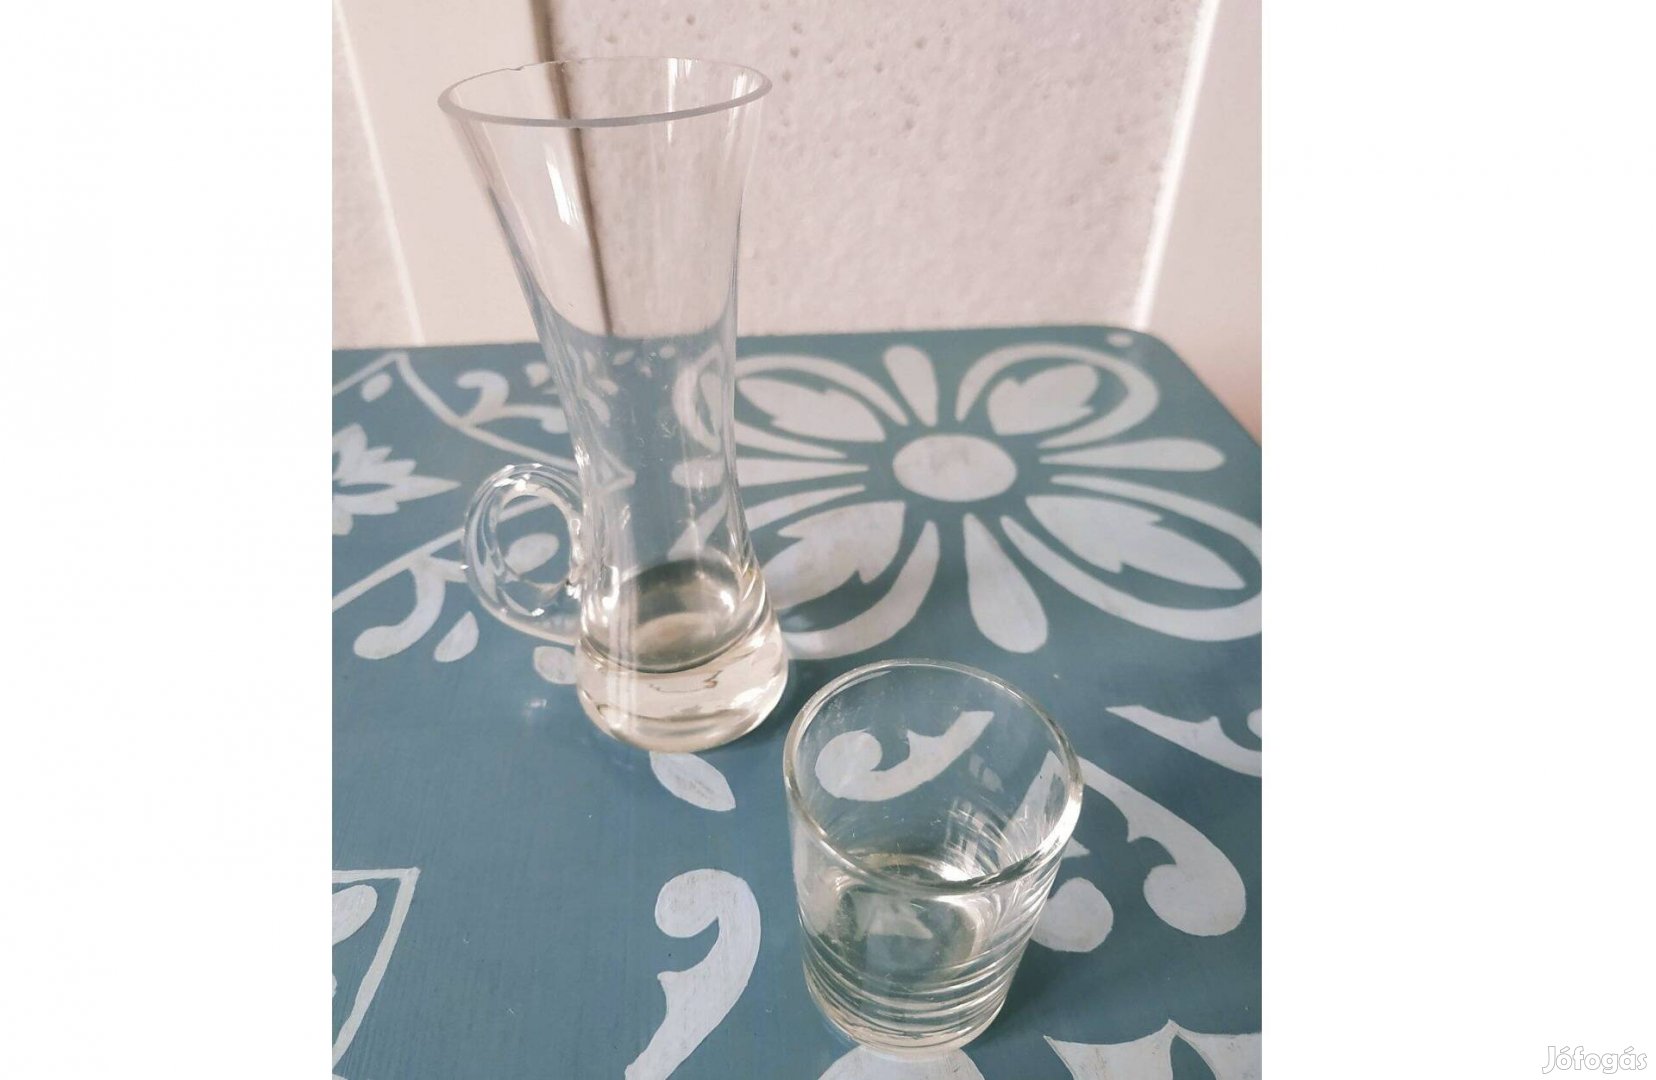 2 darab különleges röviditalos pohár, üveg